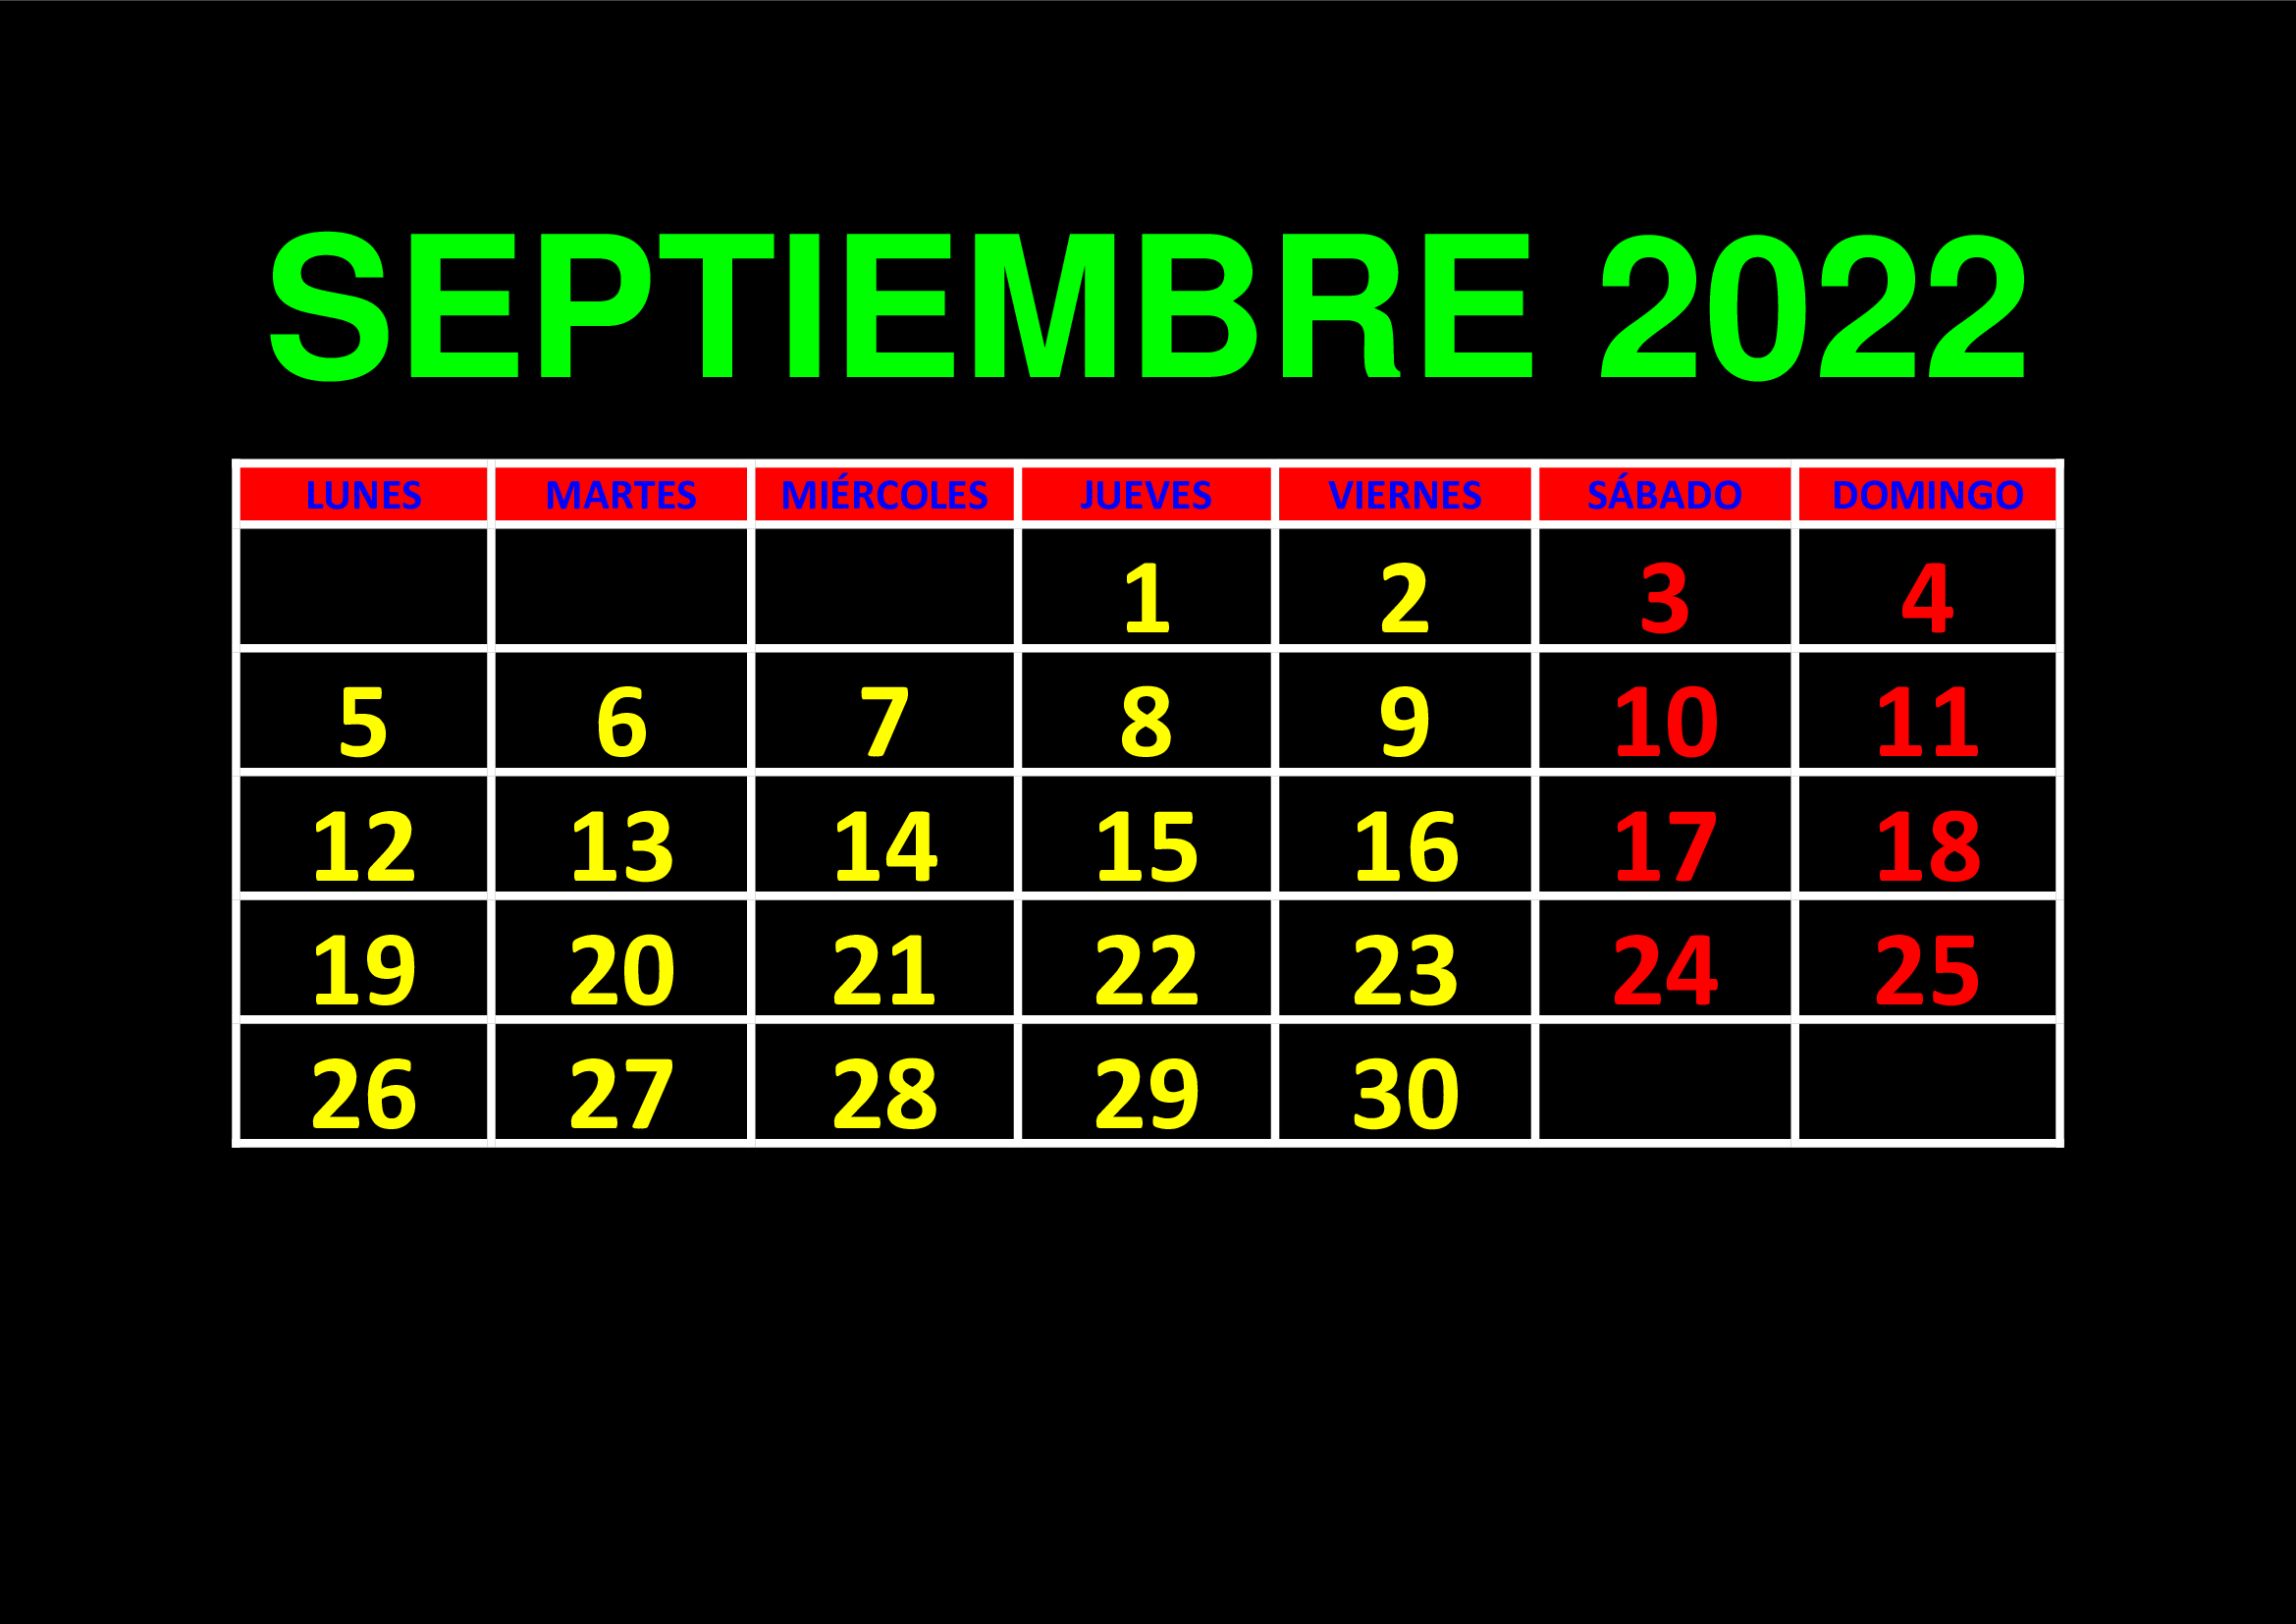 La imagen muestra el mes de septiembre de 2022